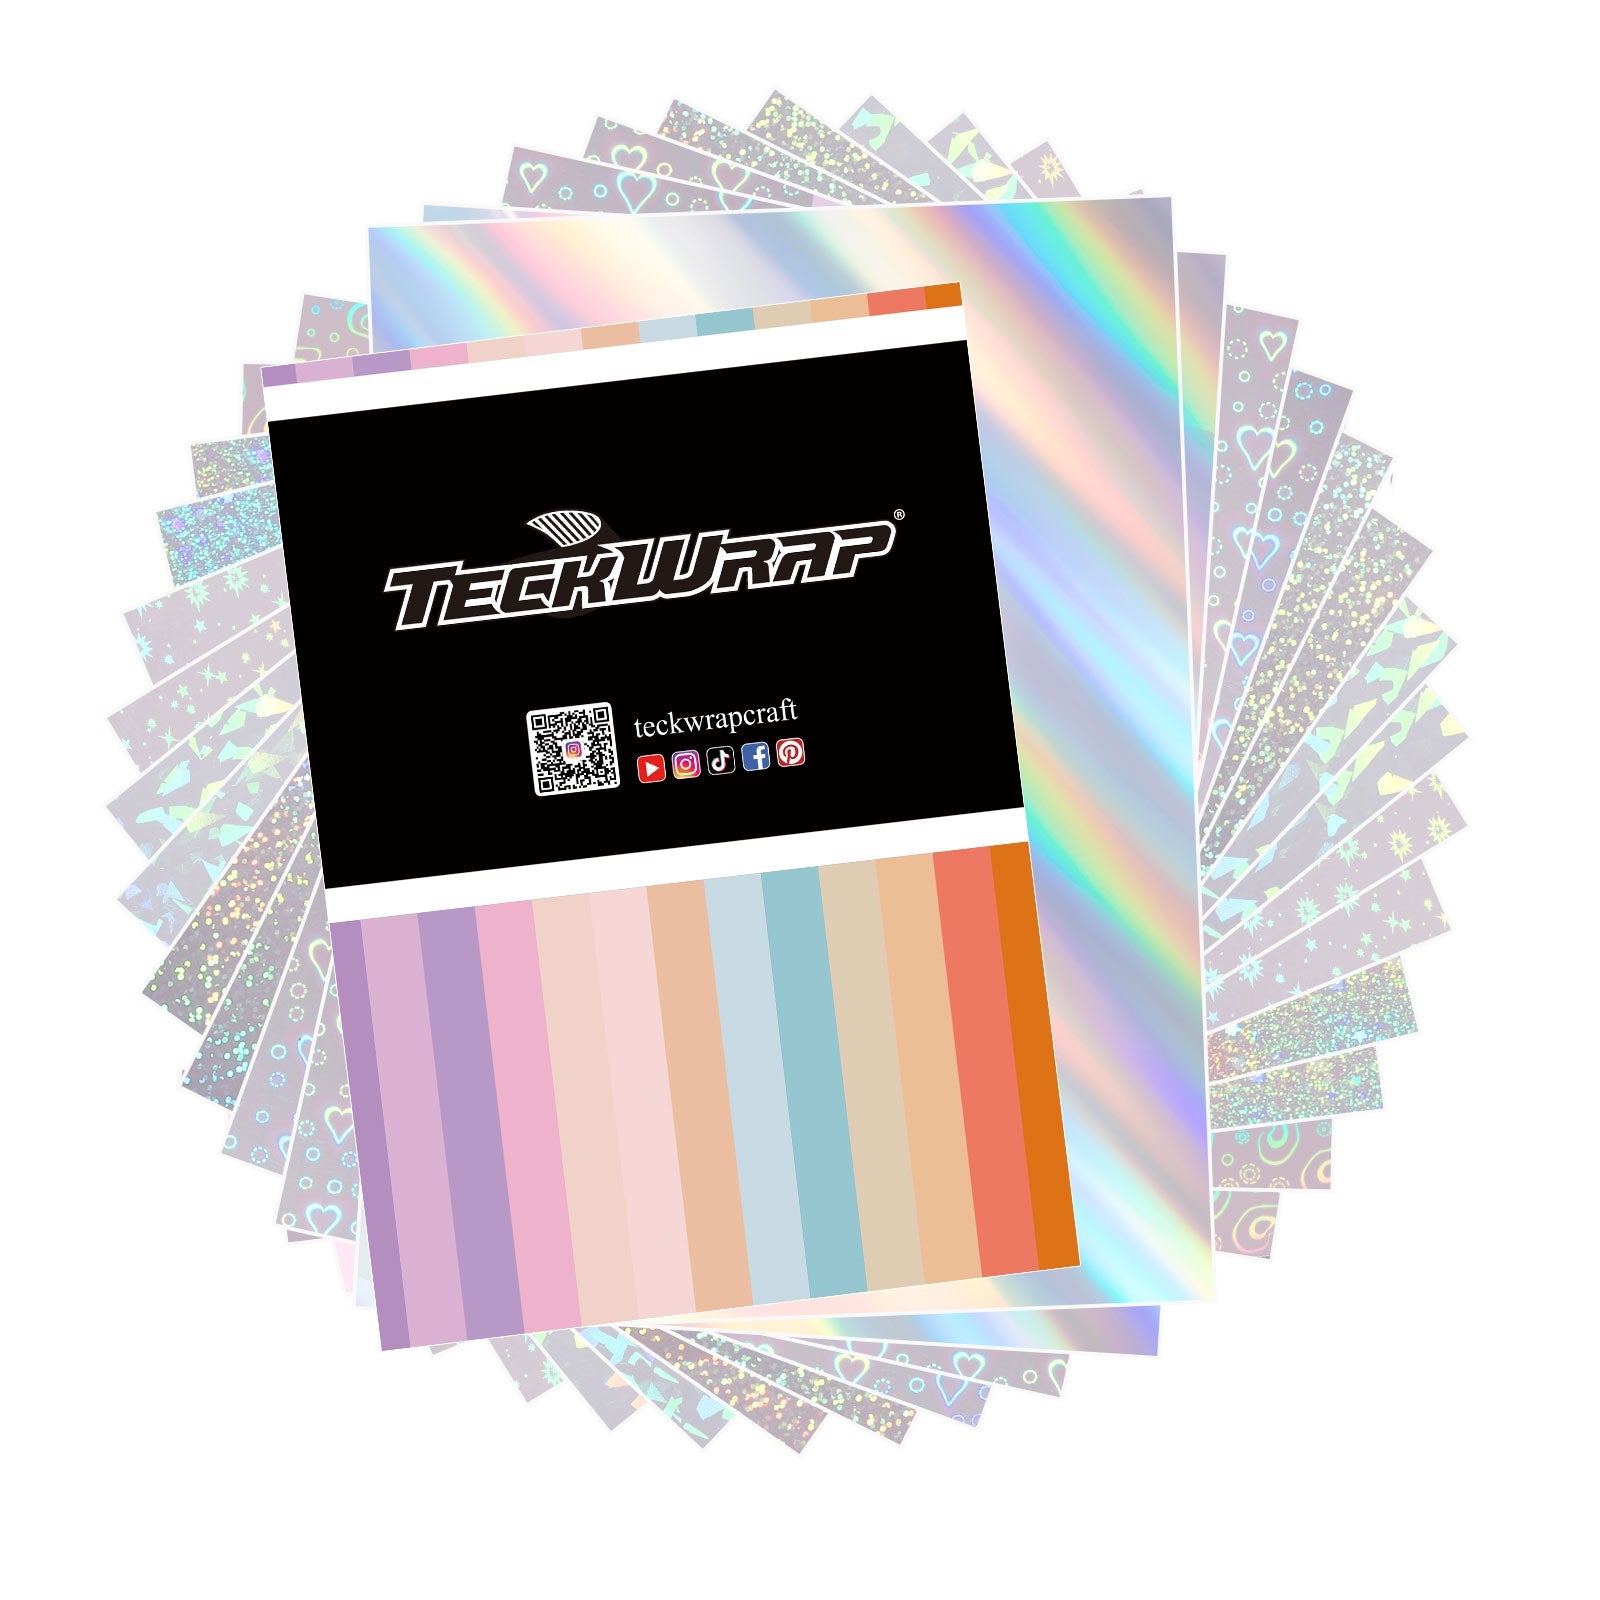 Teckwrapcraft Feuille transparante autocollante holographique - 14 feuilles A4